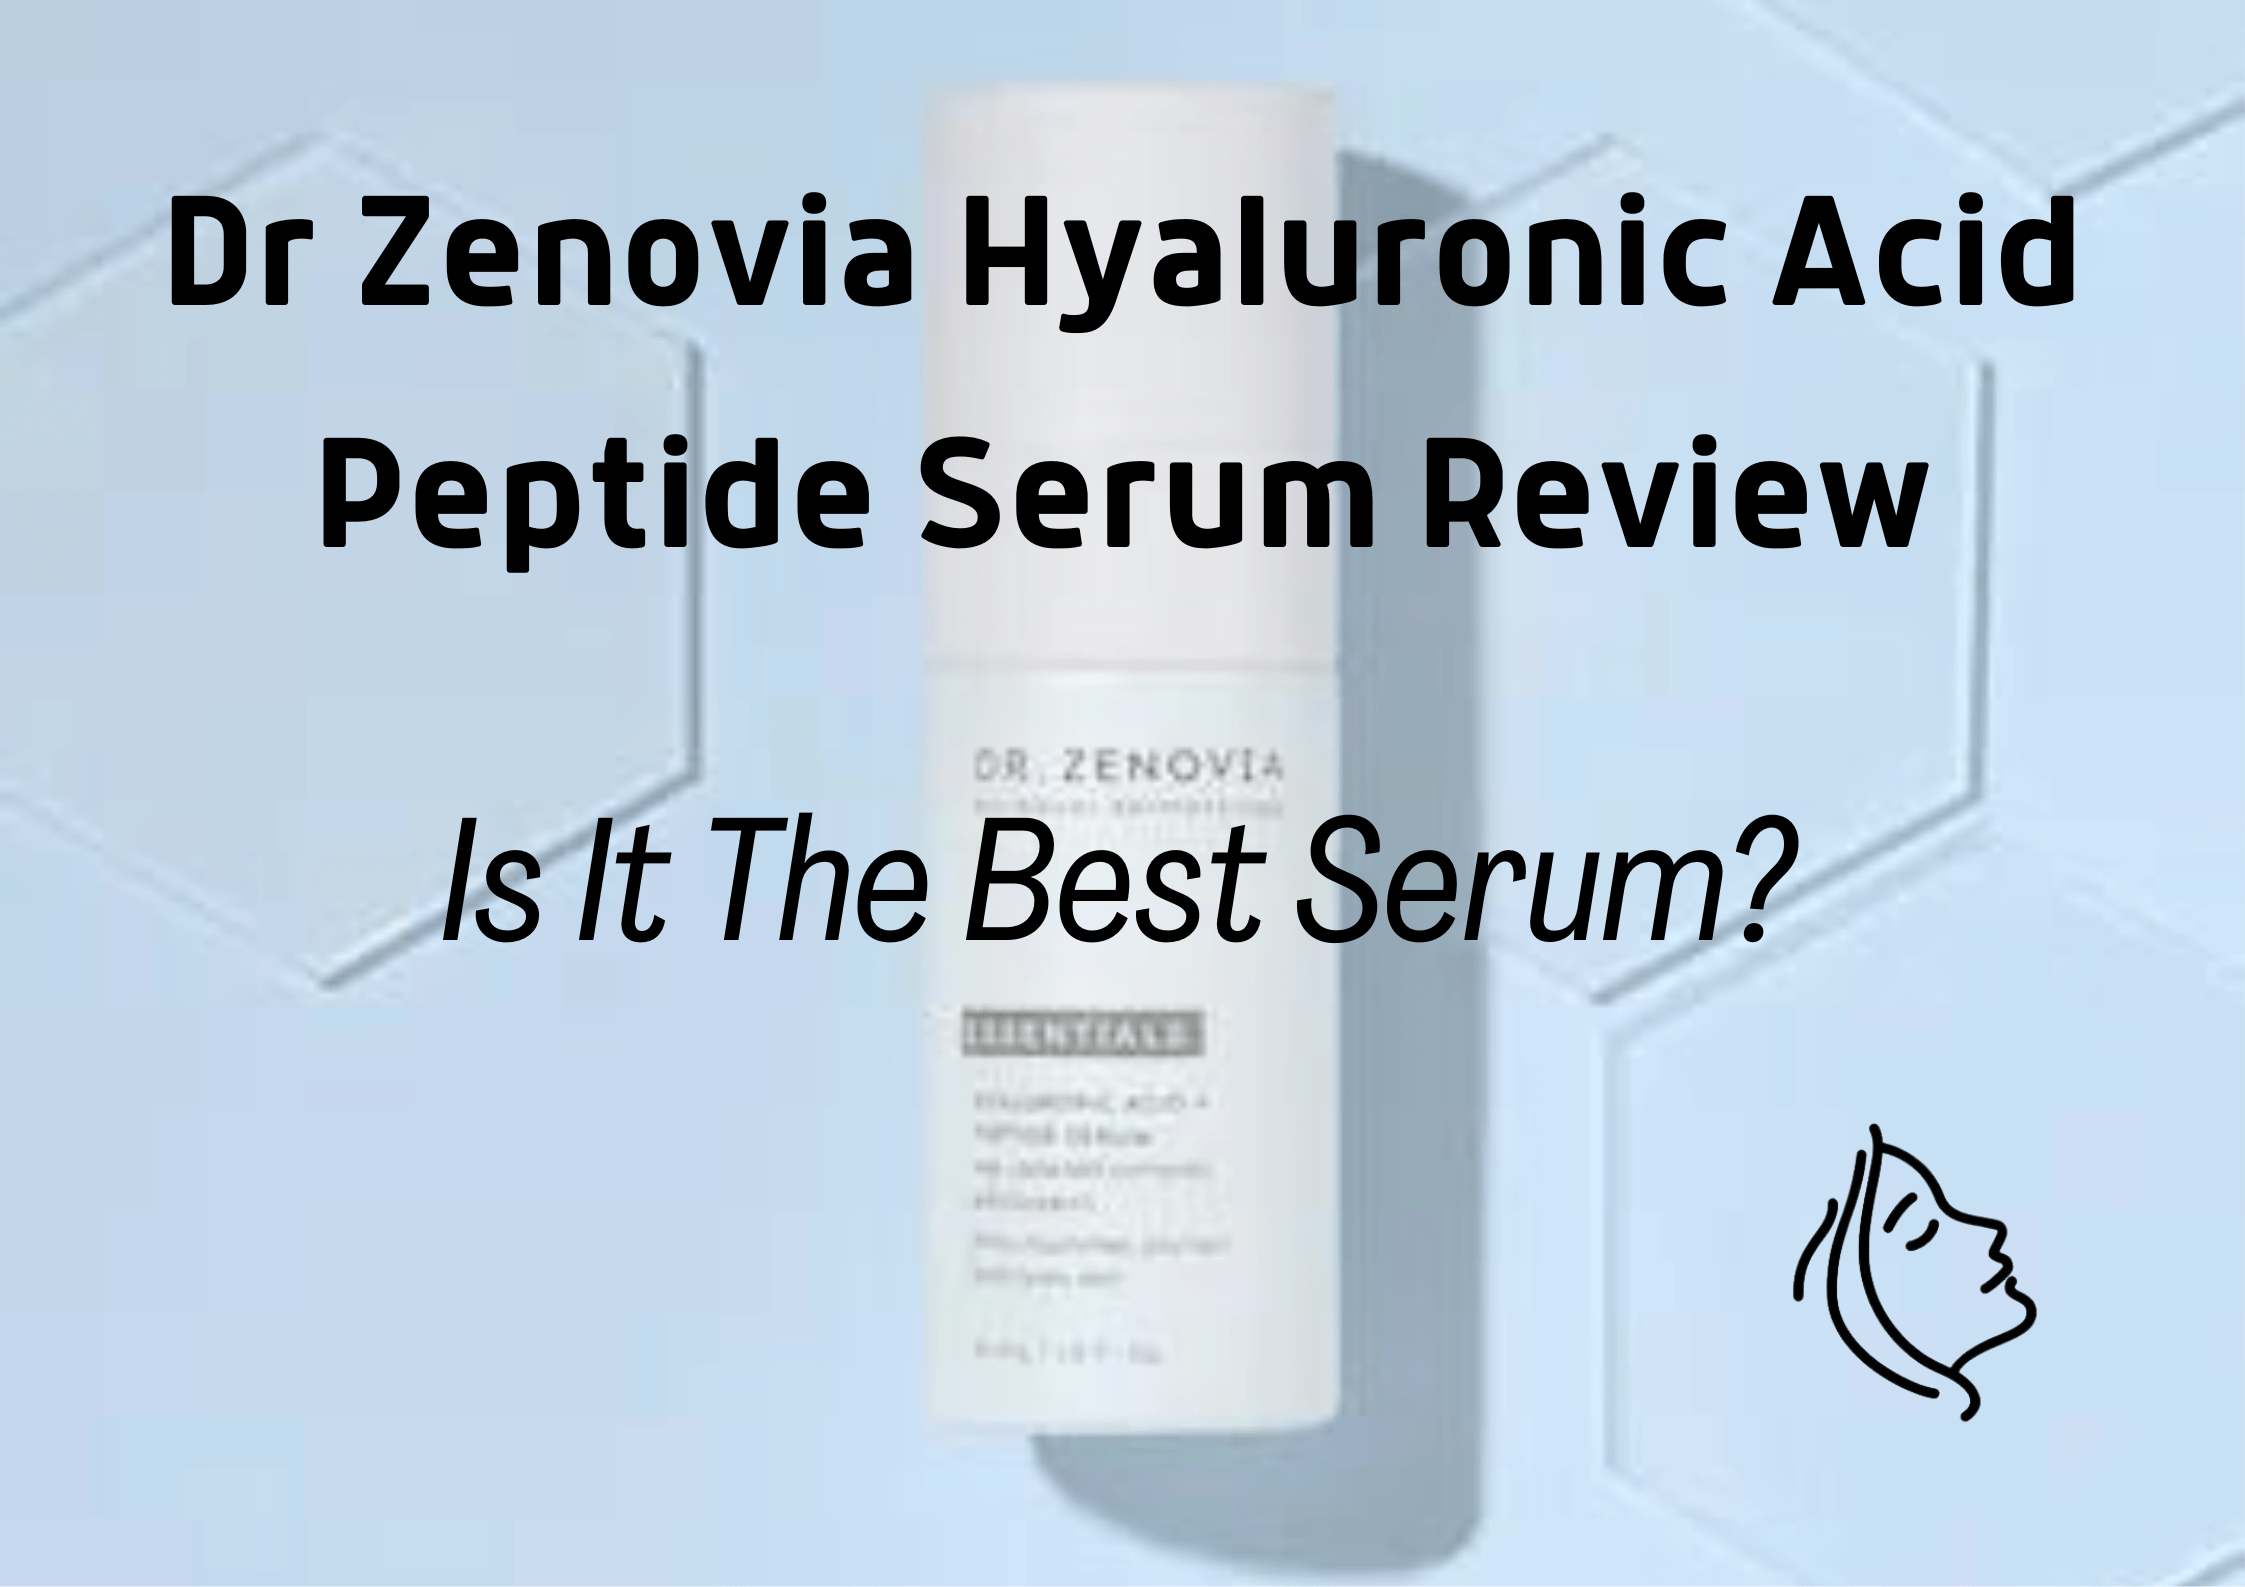 Dr Zenovia Hyaluronic Acid Peptide Serum Reviews